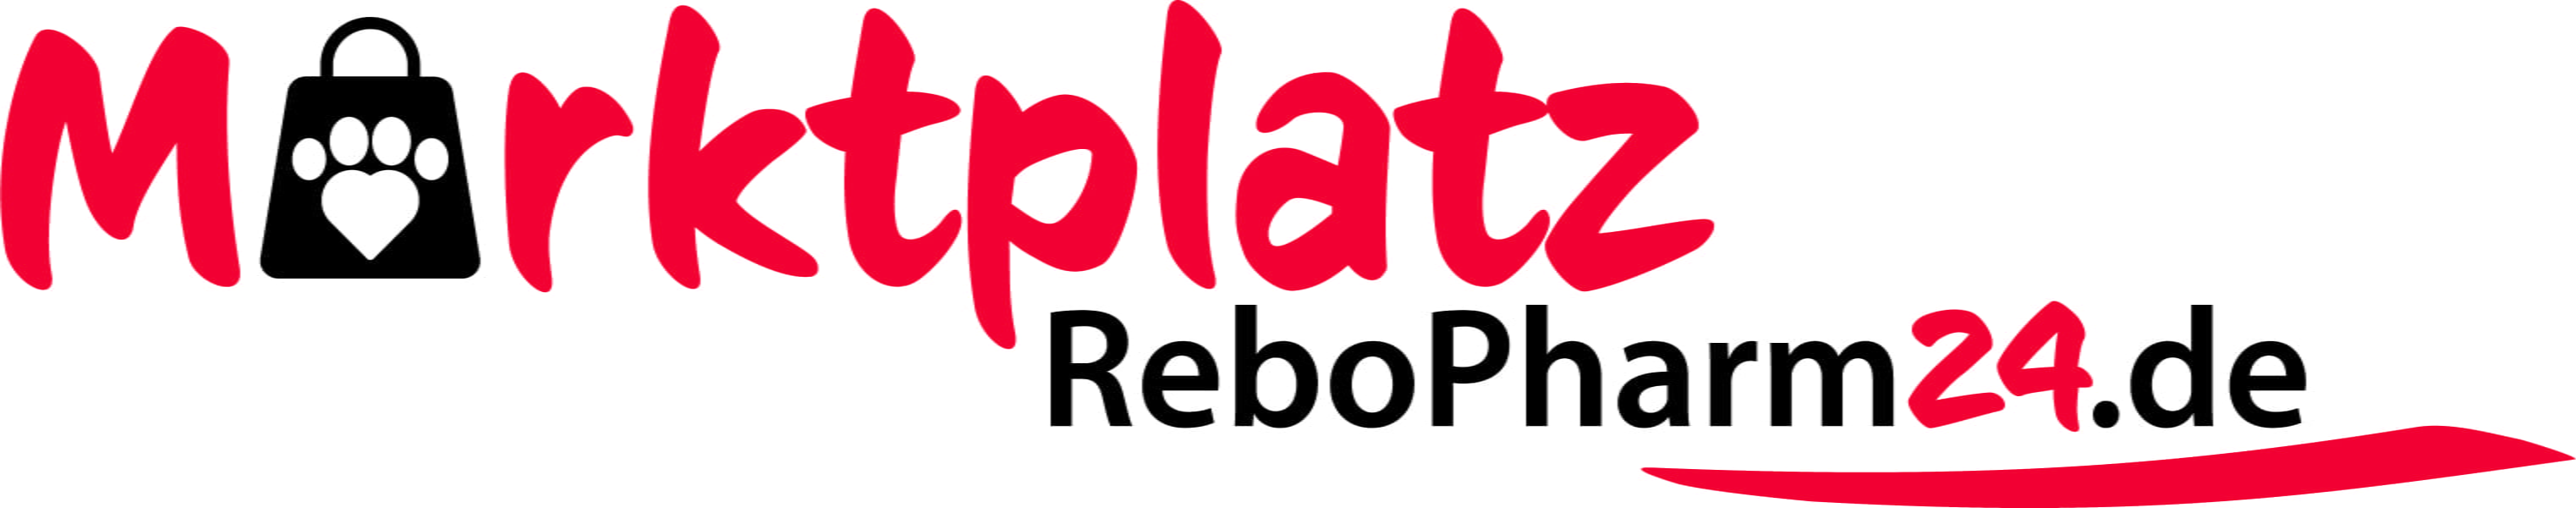 ReboPharm24Marktplatz_Logo